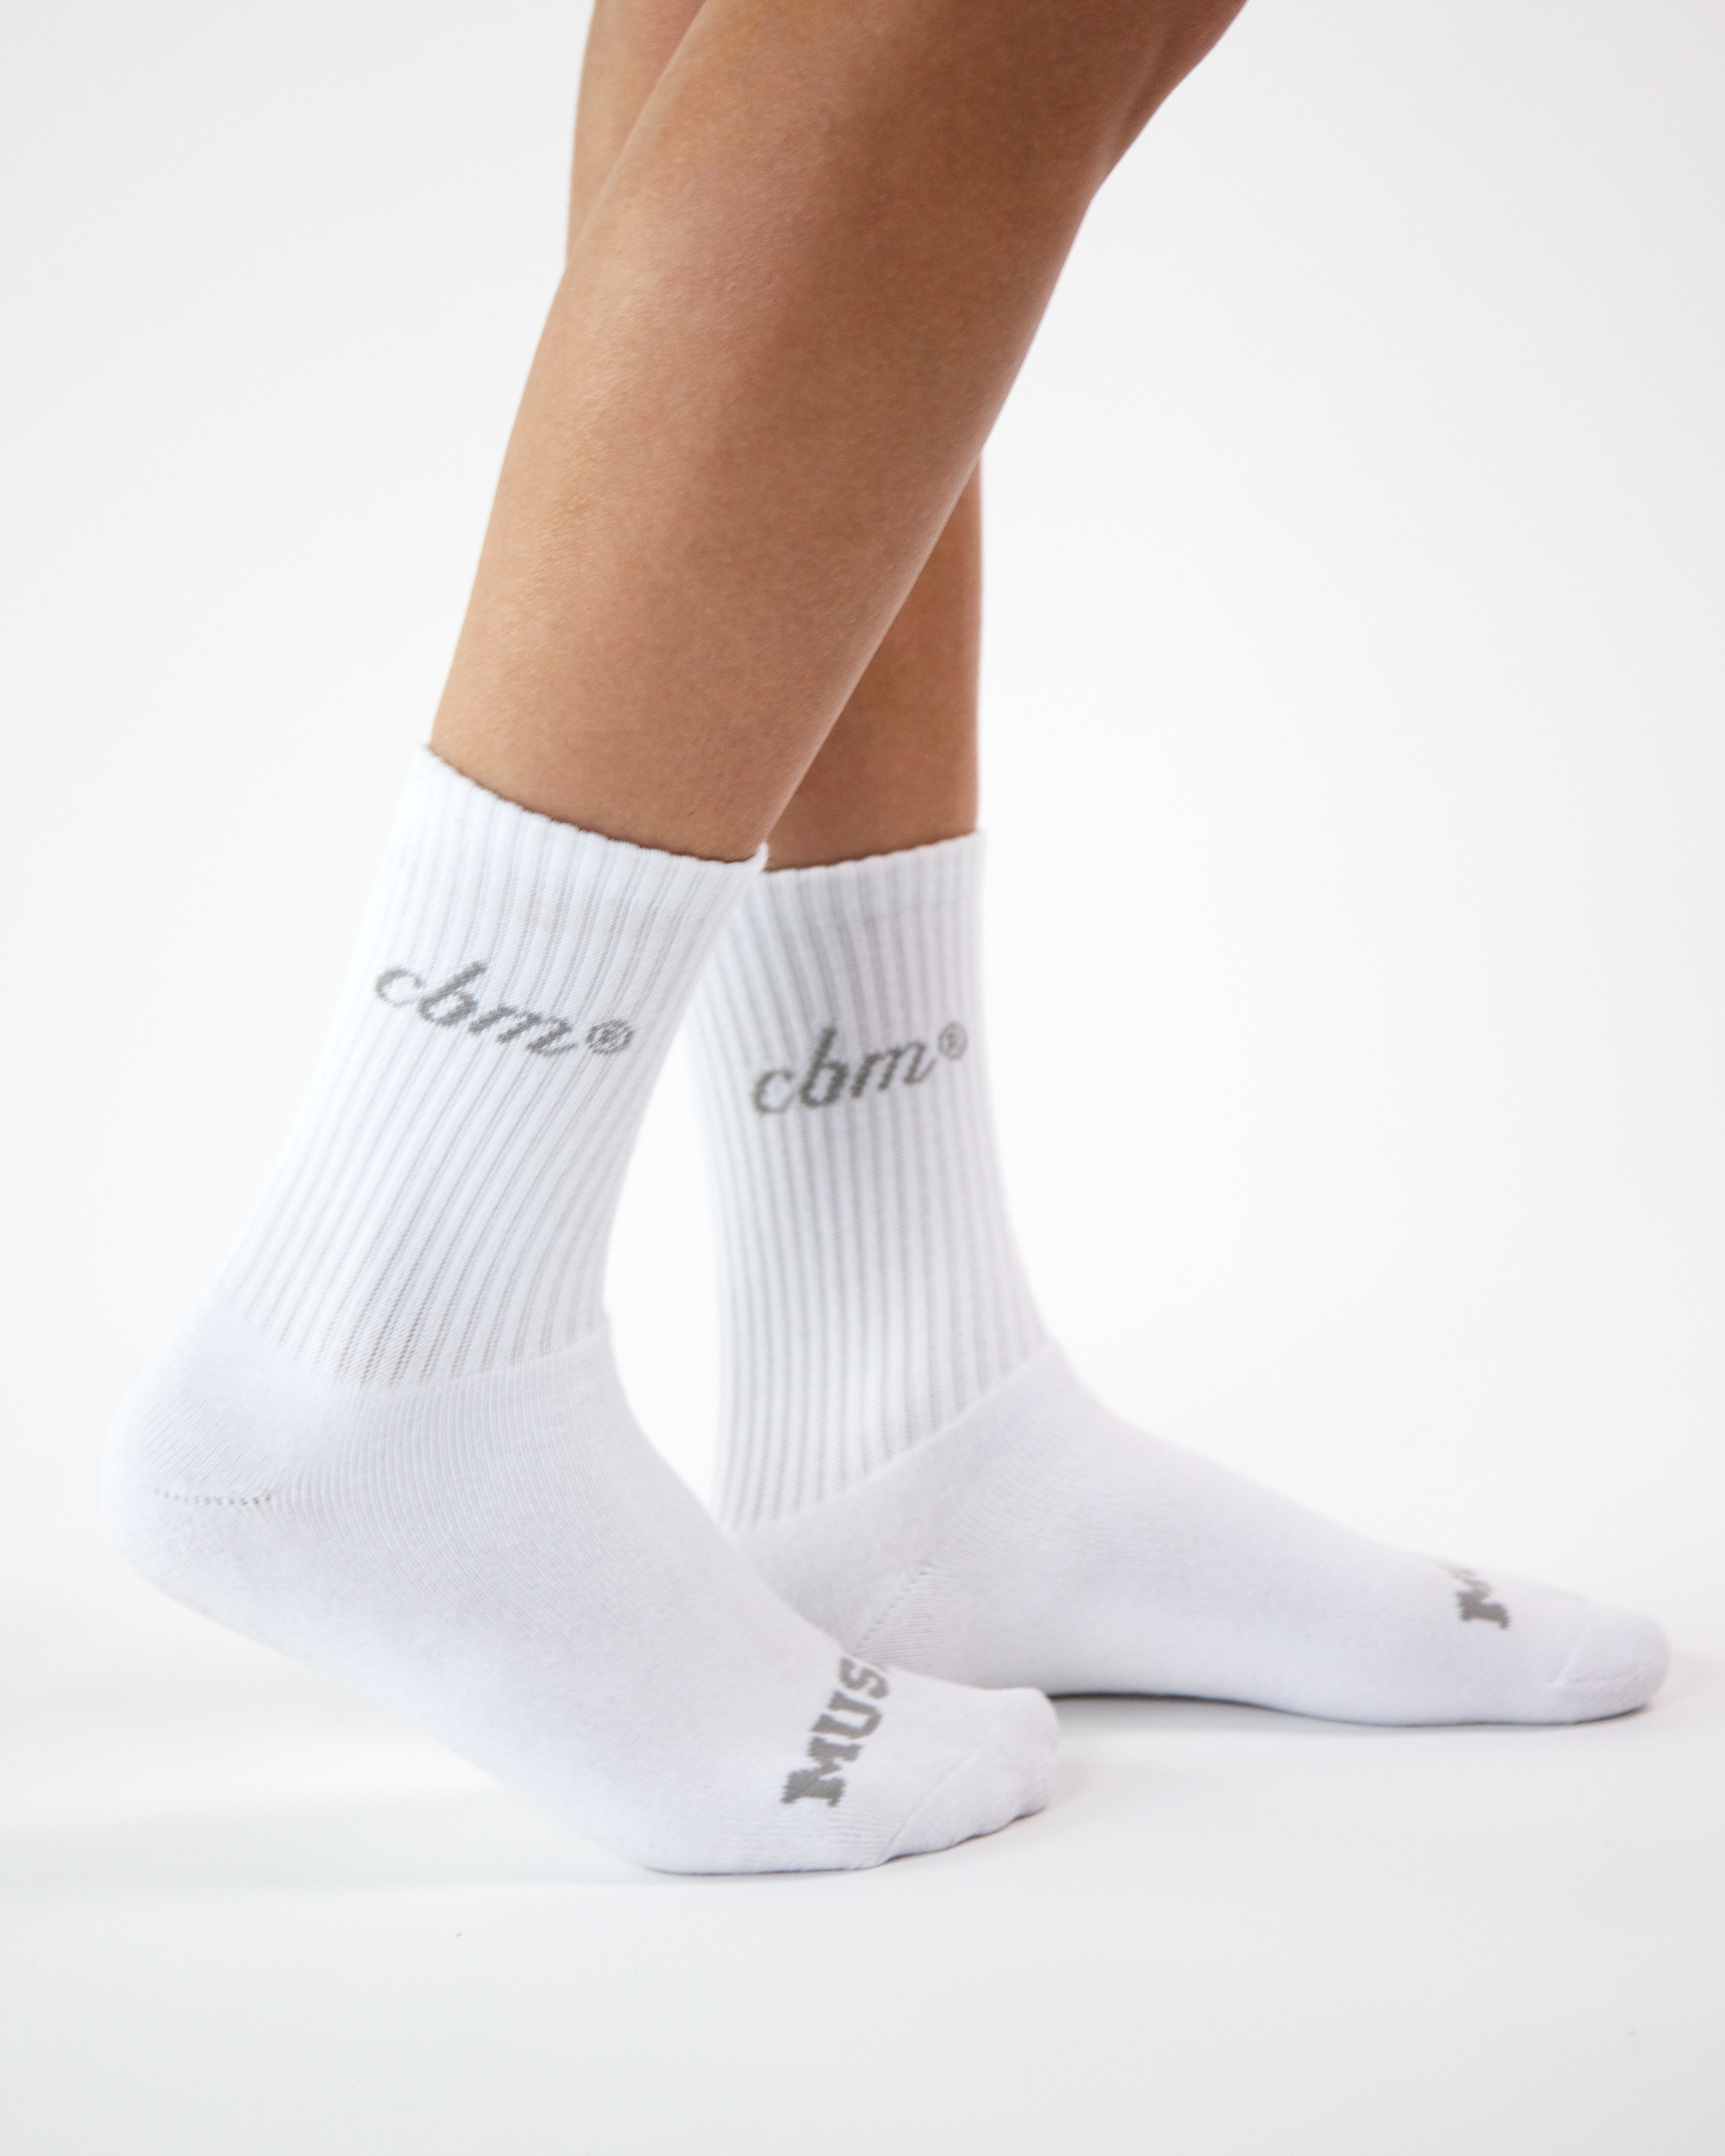 Crew socks 6" - White